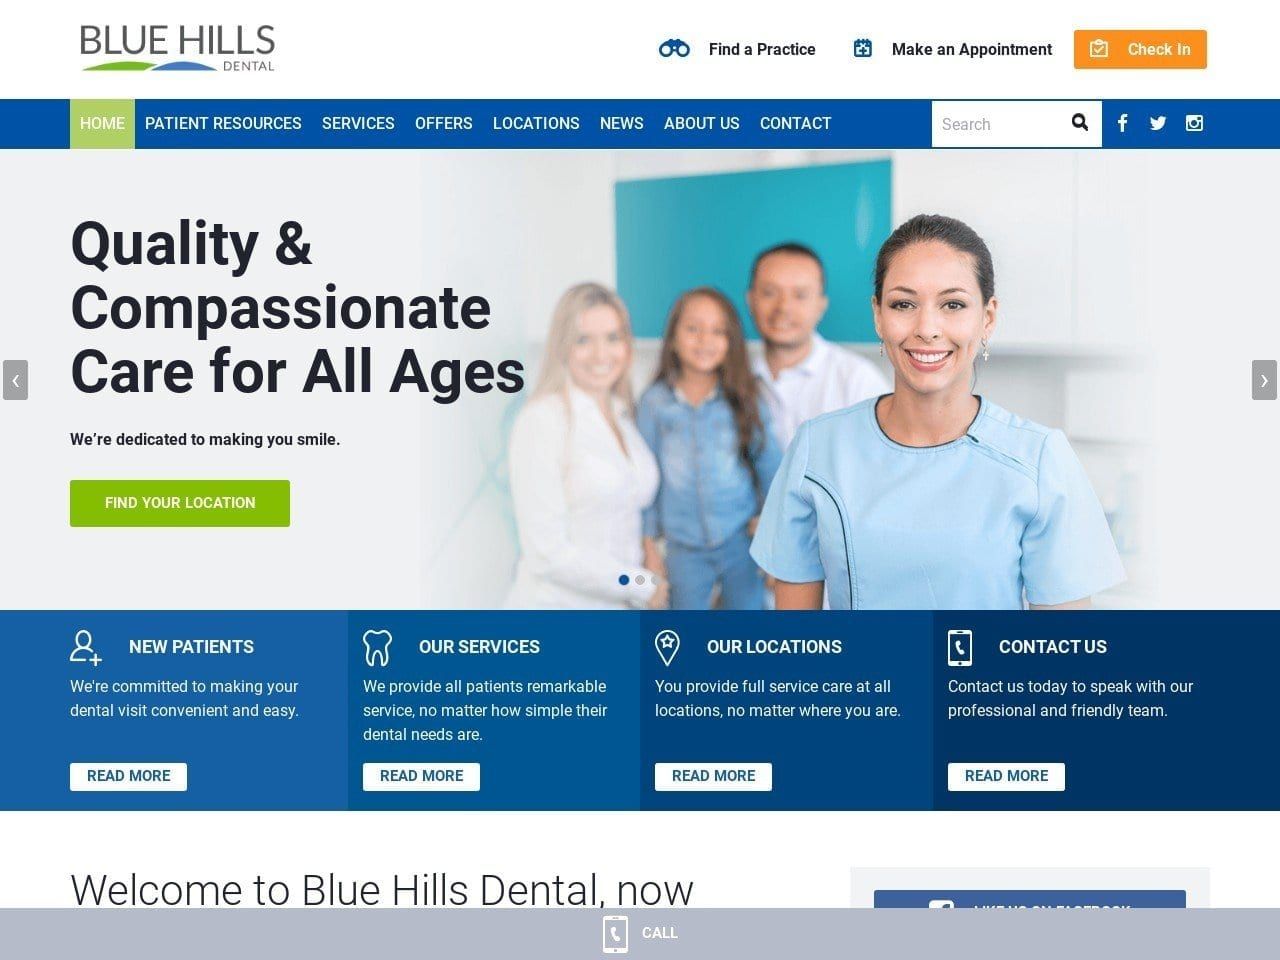 Blue Hills Dental Group Website Screenshot from bluehillsdental.com